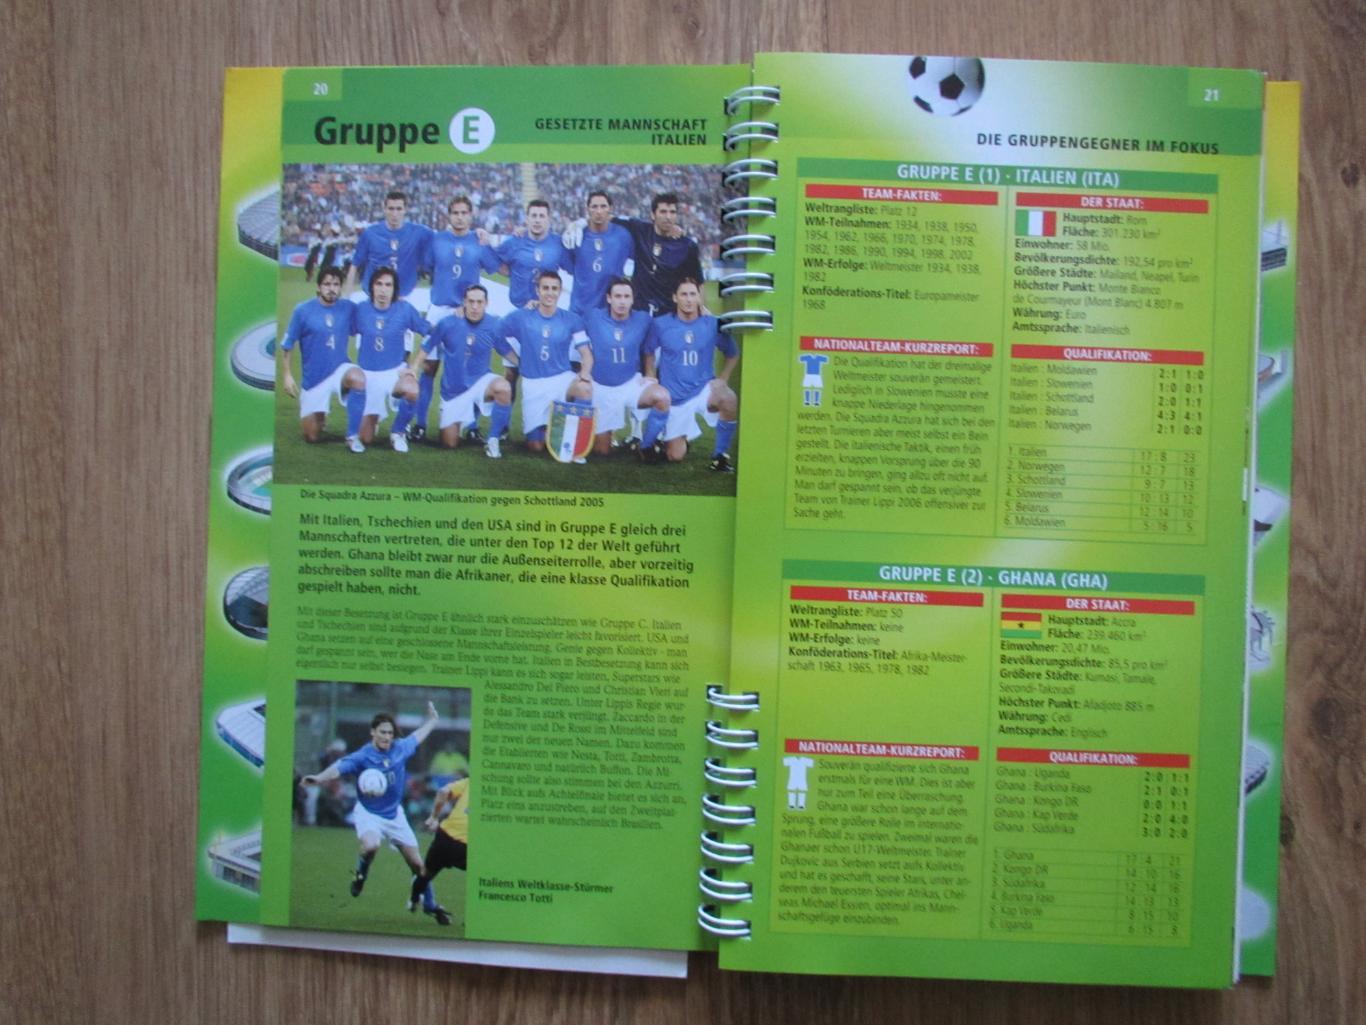 Чемпионат мира 2006, Германия,путеводитель по 12-ти городам 2